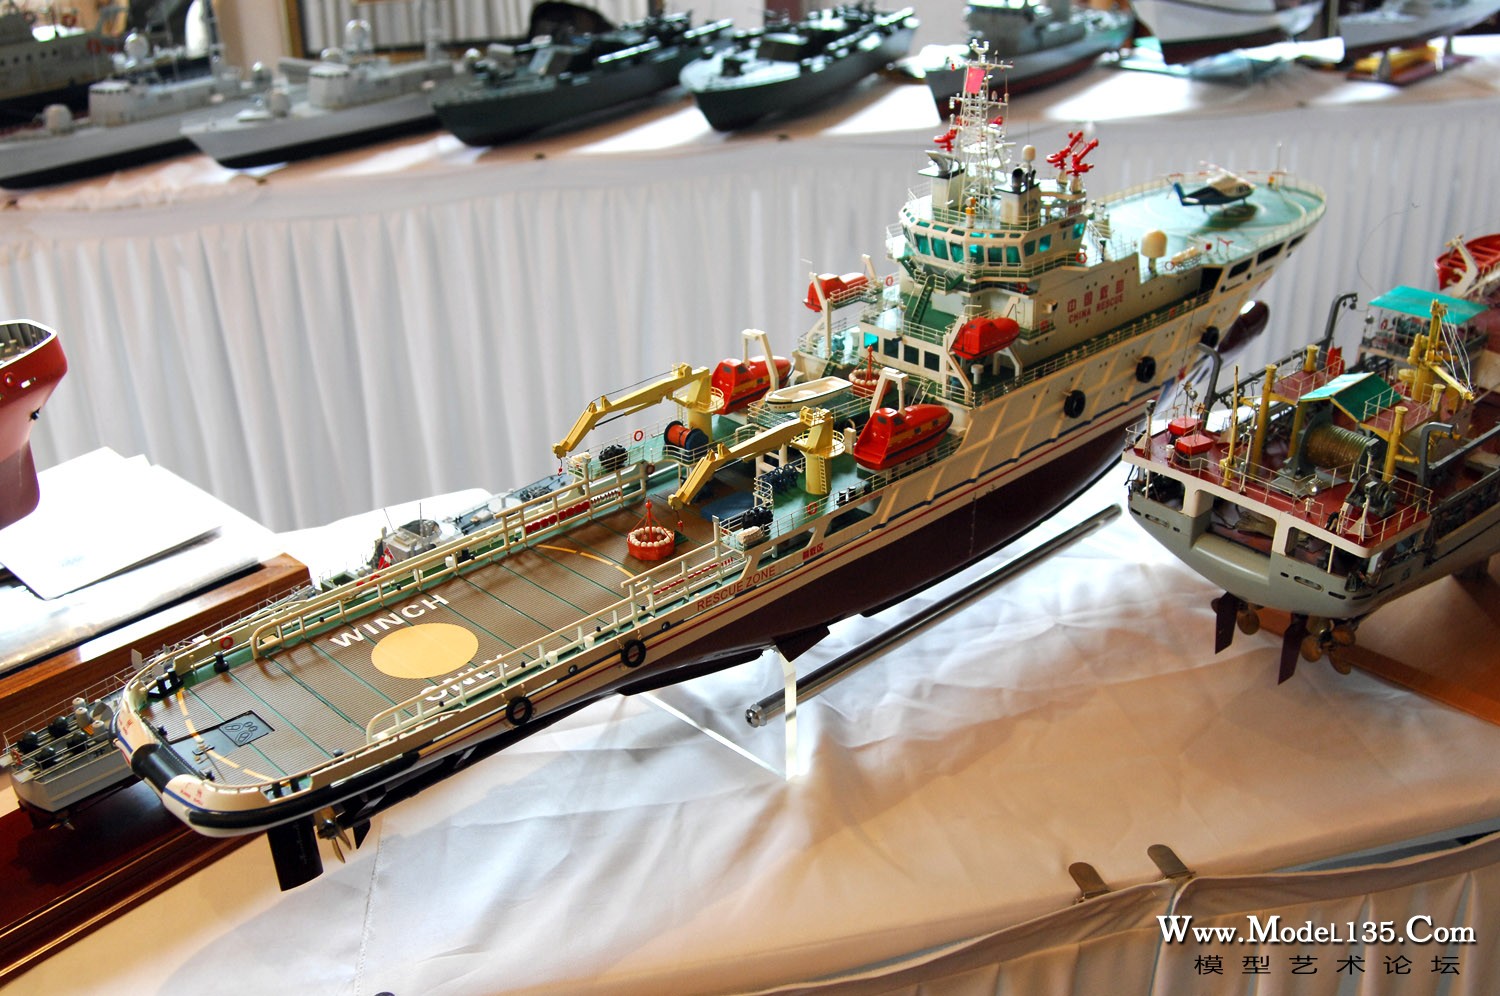 仿真竞赛现场－C2:F2机械船模－广东队救助船模型.jpg